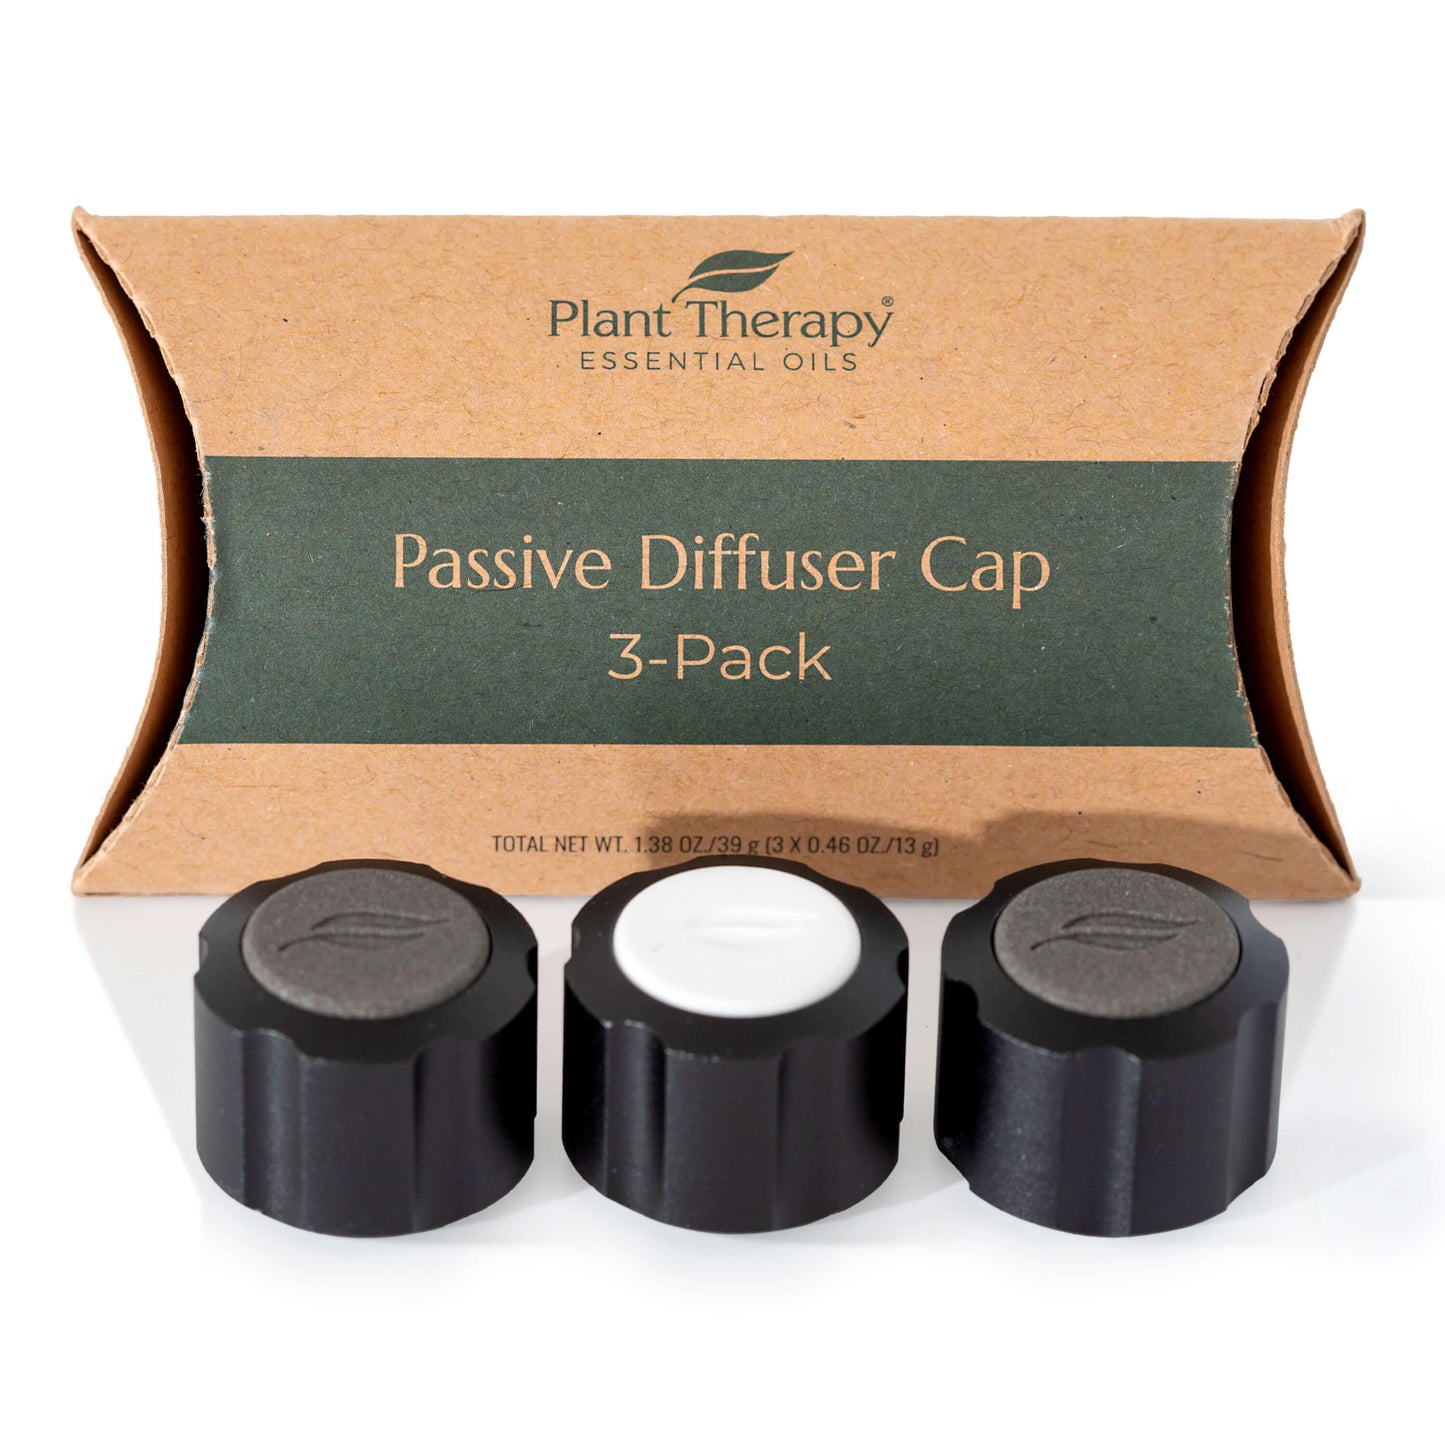 Passive Diffuser Cap 3-Pack